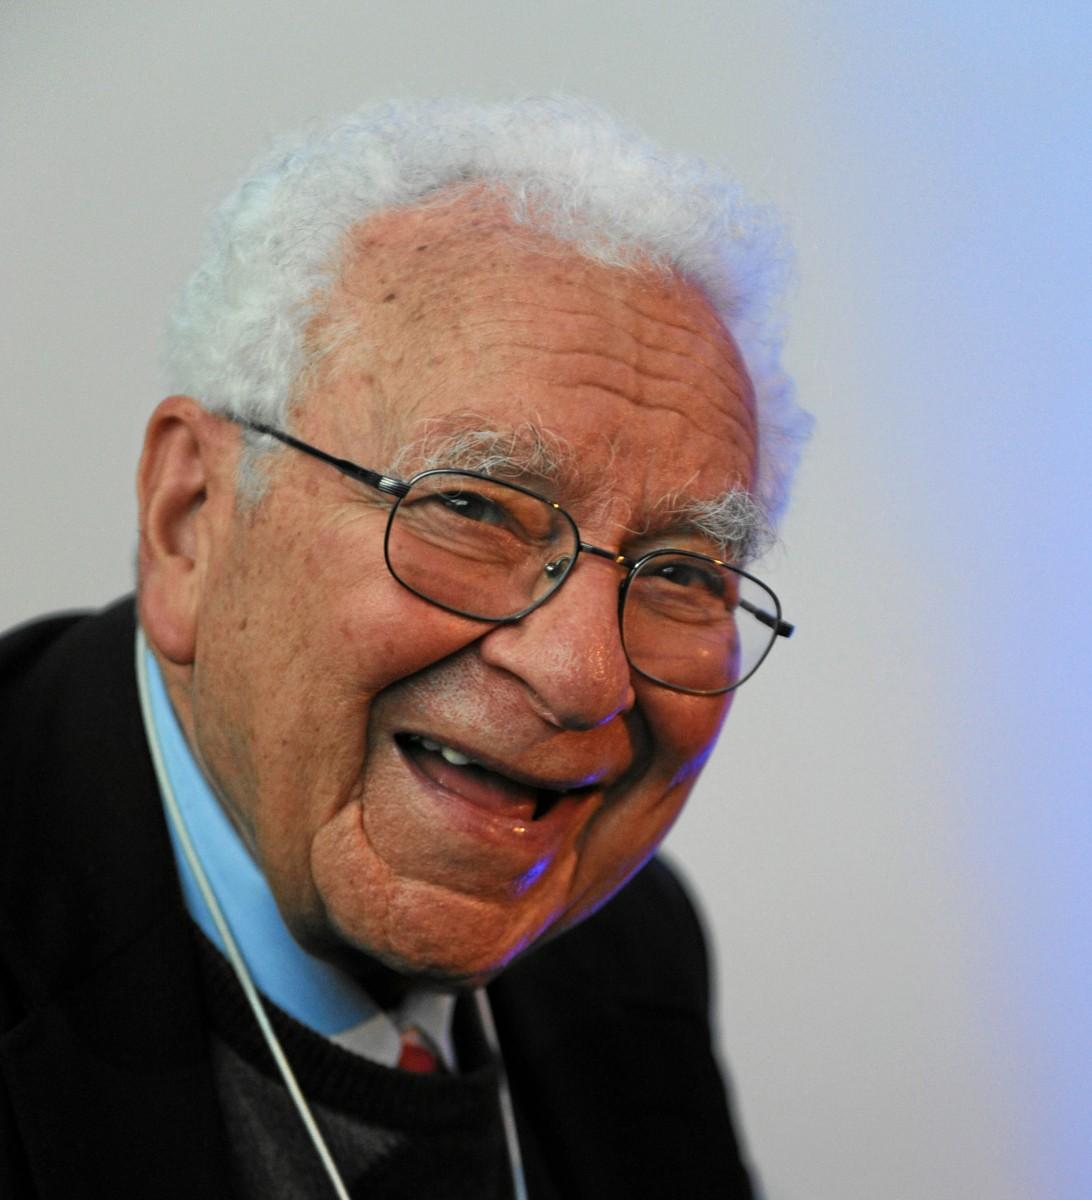 <a><img class="size-large wp-image-1783392" title="Murray Gell-Mann. (World Economic Forum)" src="https://www.theepochtimes.com/assets/uploads/2015/09/Murray_Gell-Mann_-_World_Economic_Forum_Annual_Meeting_2012.jpg" alt="Murray Gell-Mann. (World Economic Forum)" width="536" height="590"/></a>